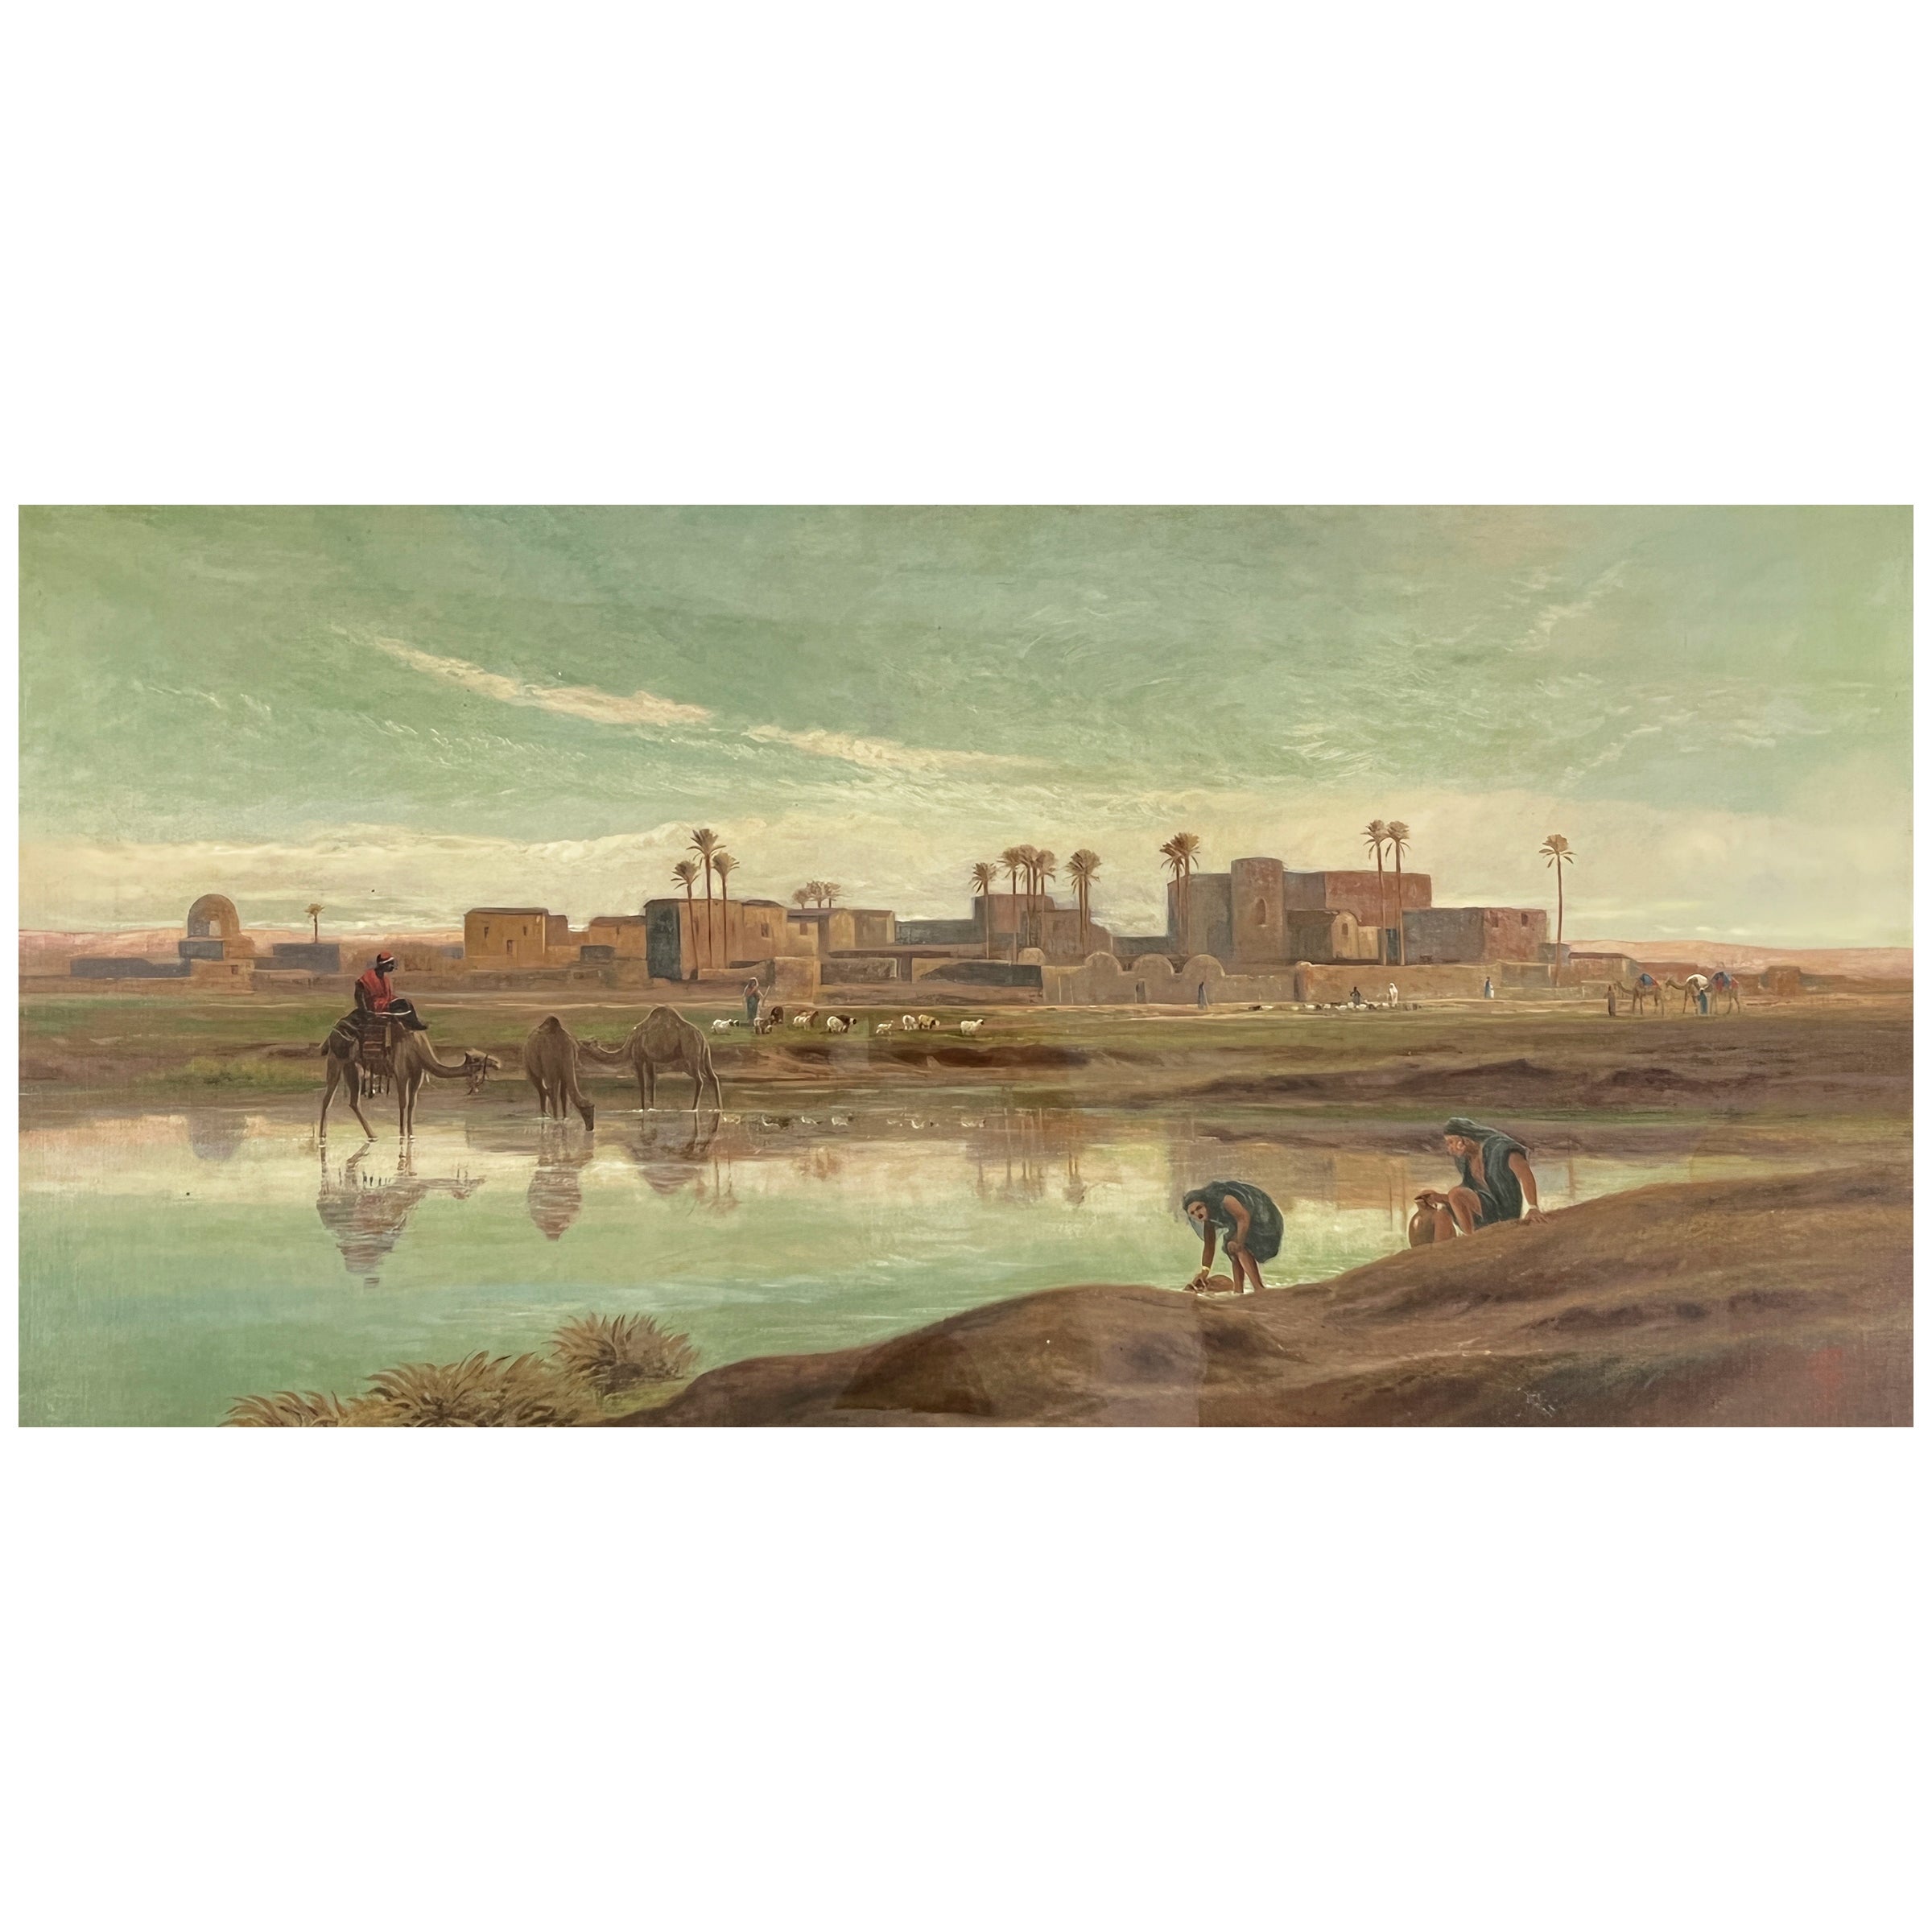 Peinture de qualité exquise de l'artiste anglais Frederick Goodalls R.A. représentant le Nil en Egypte, signée 'F.G.' en bas à droite ; datée 1875, dans un cadre en bois doré et verre. 

Dimensions : Cadre : H : 80cm, L : 132cm, P : 9cm

Toile :